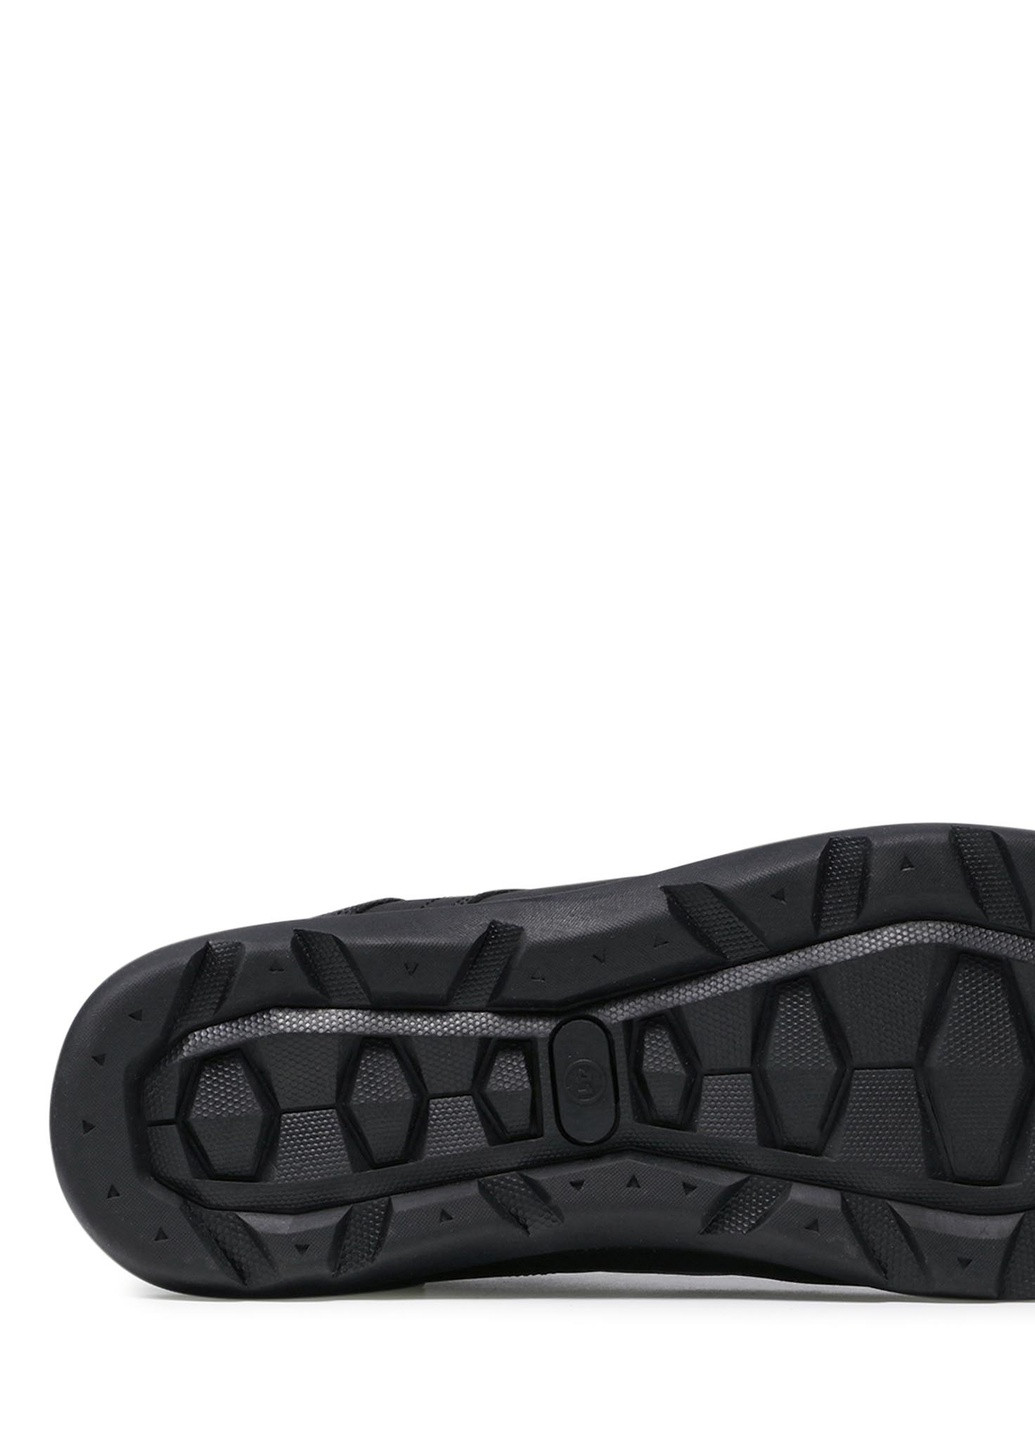 Черные осенние черевики mp07-01491-01 Lanetti